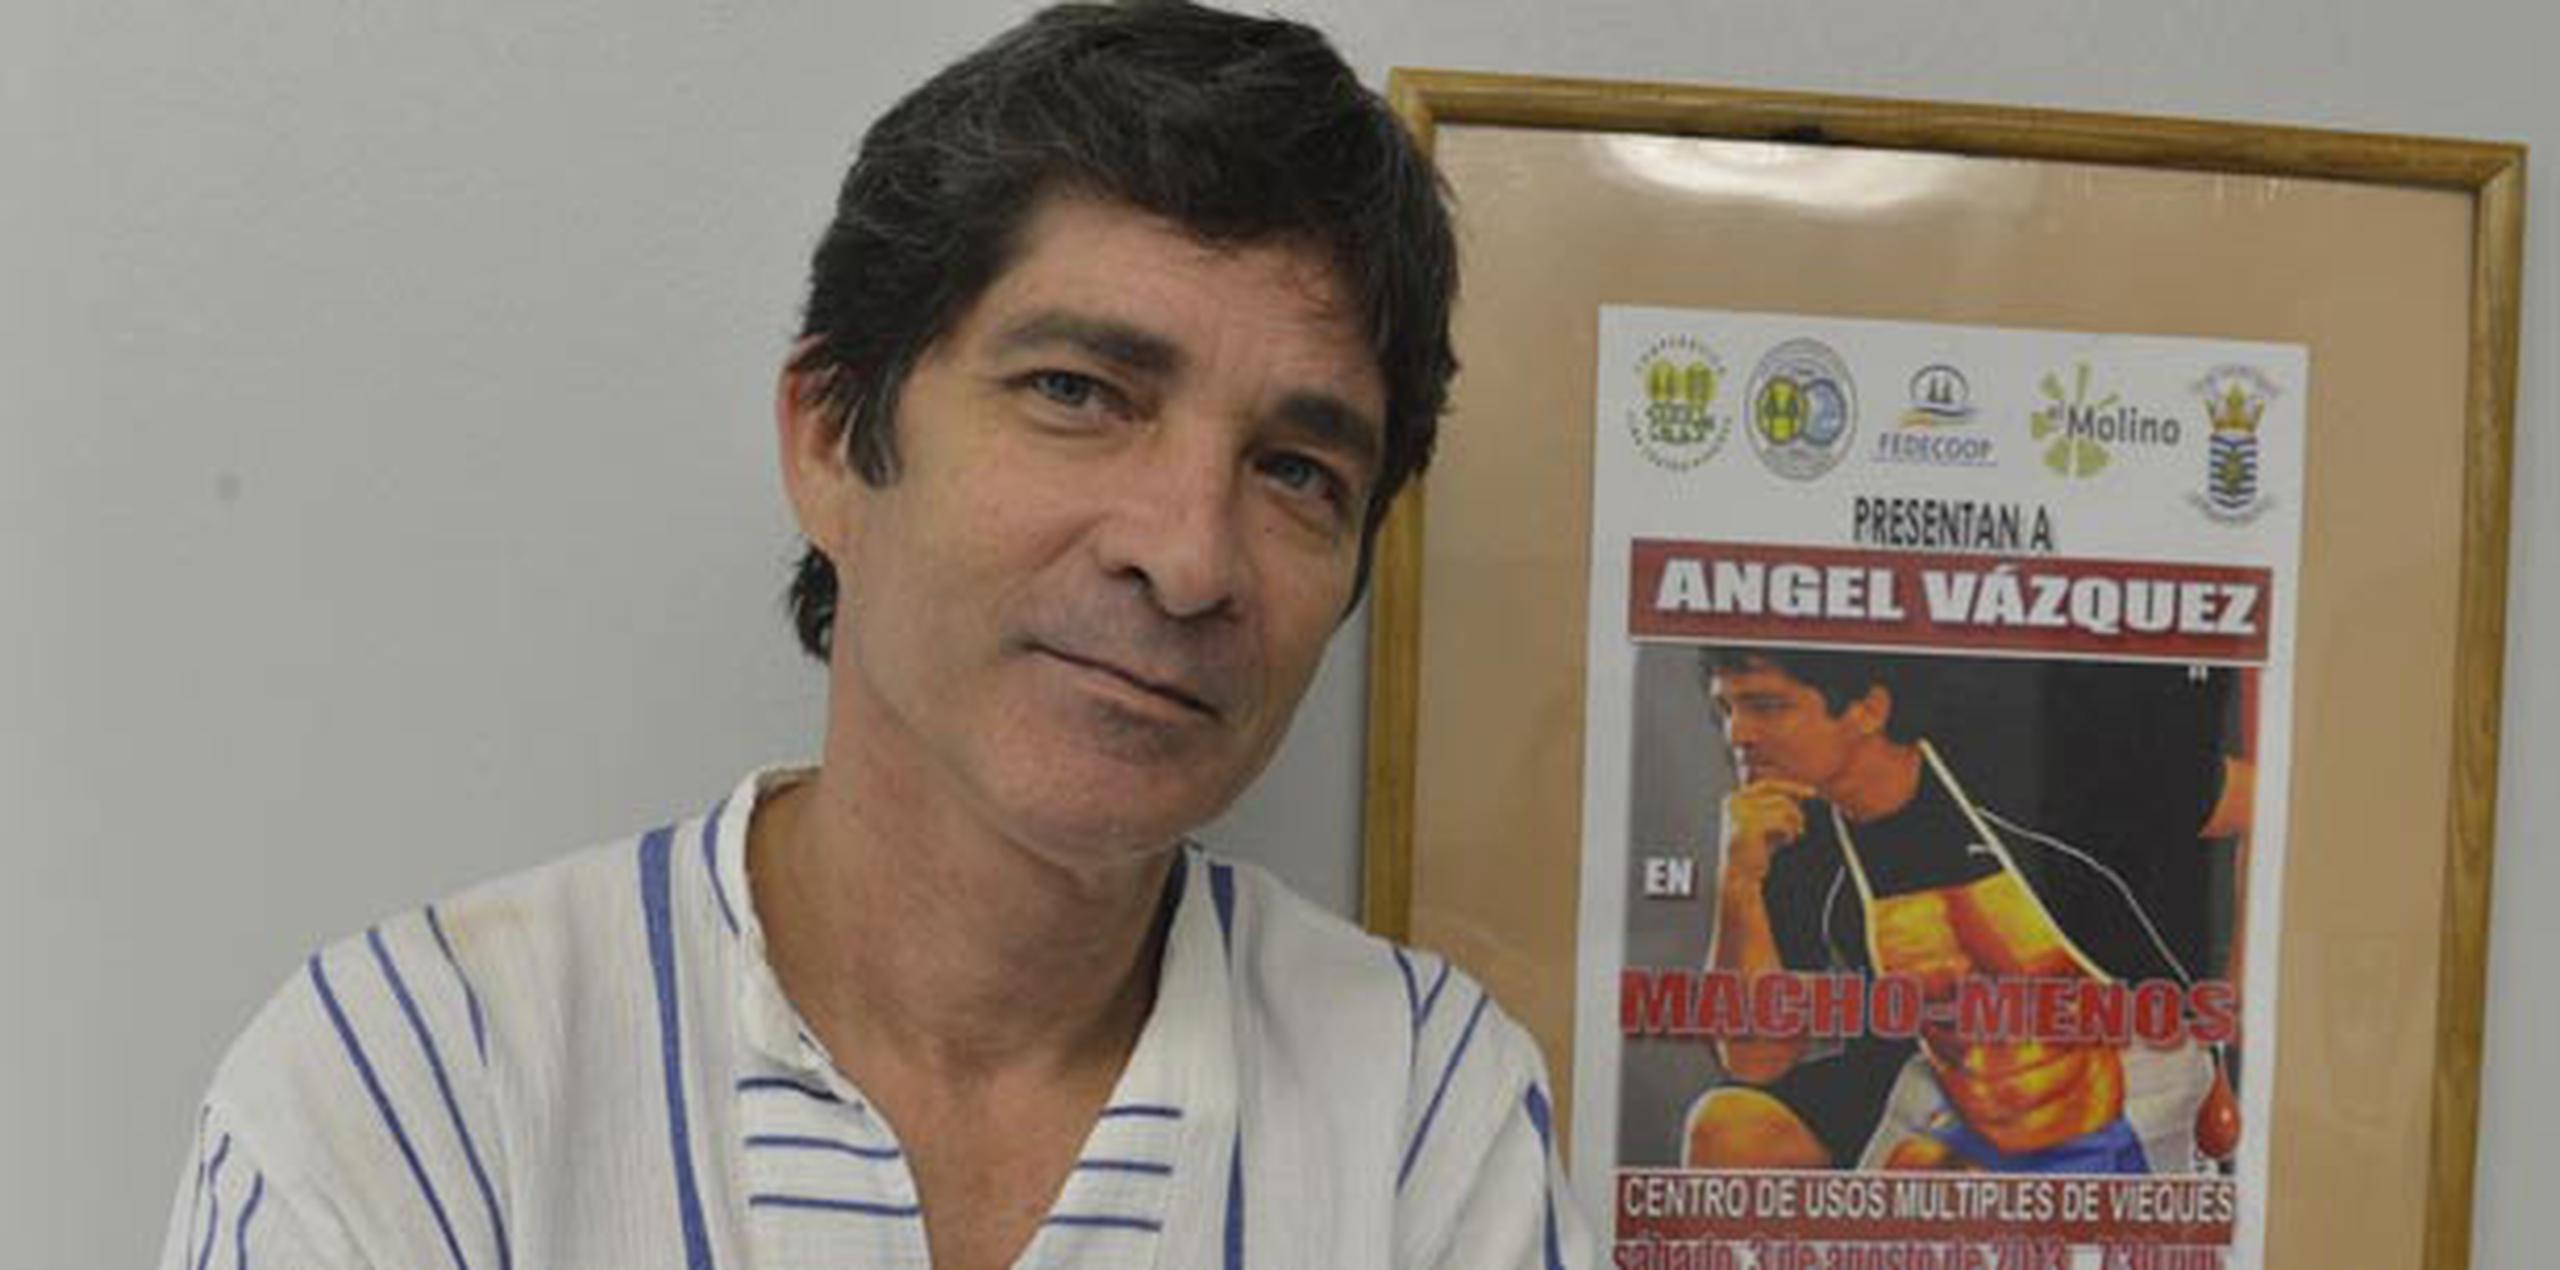 El actor Ángel Vázquez presentará su trabajo unipersonal “Macho-Menos” en el marco del Festival de Teatro de Caguas. (Archivo)